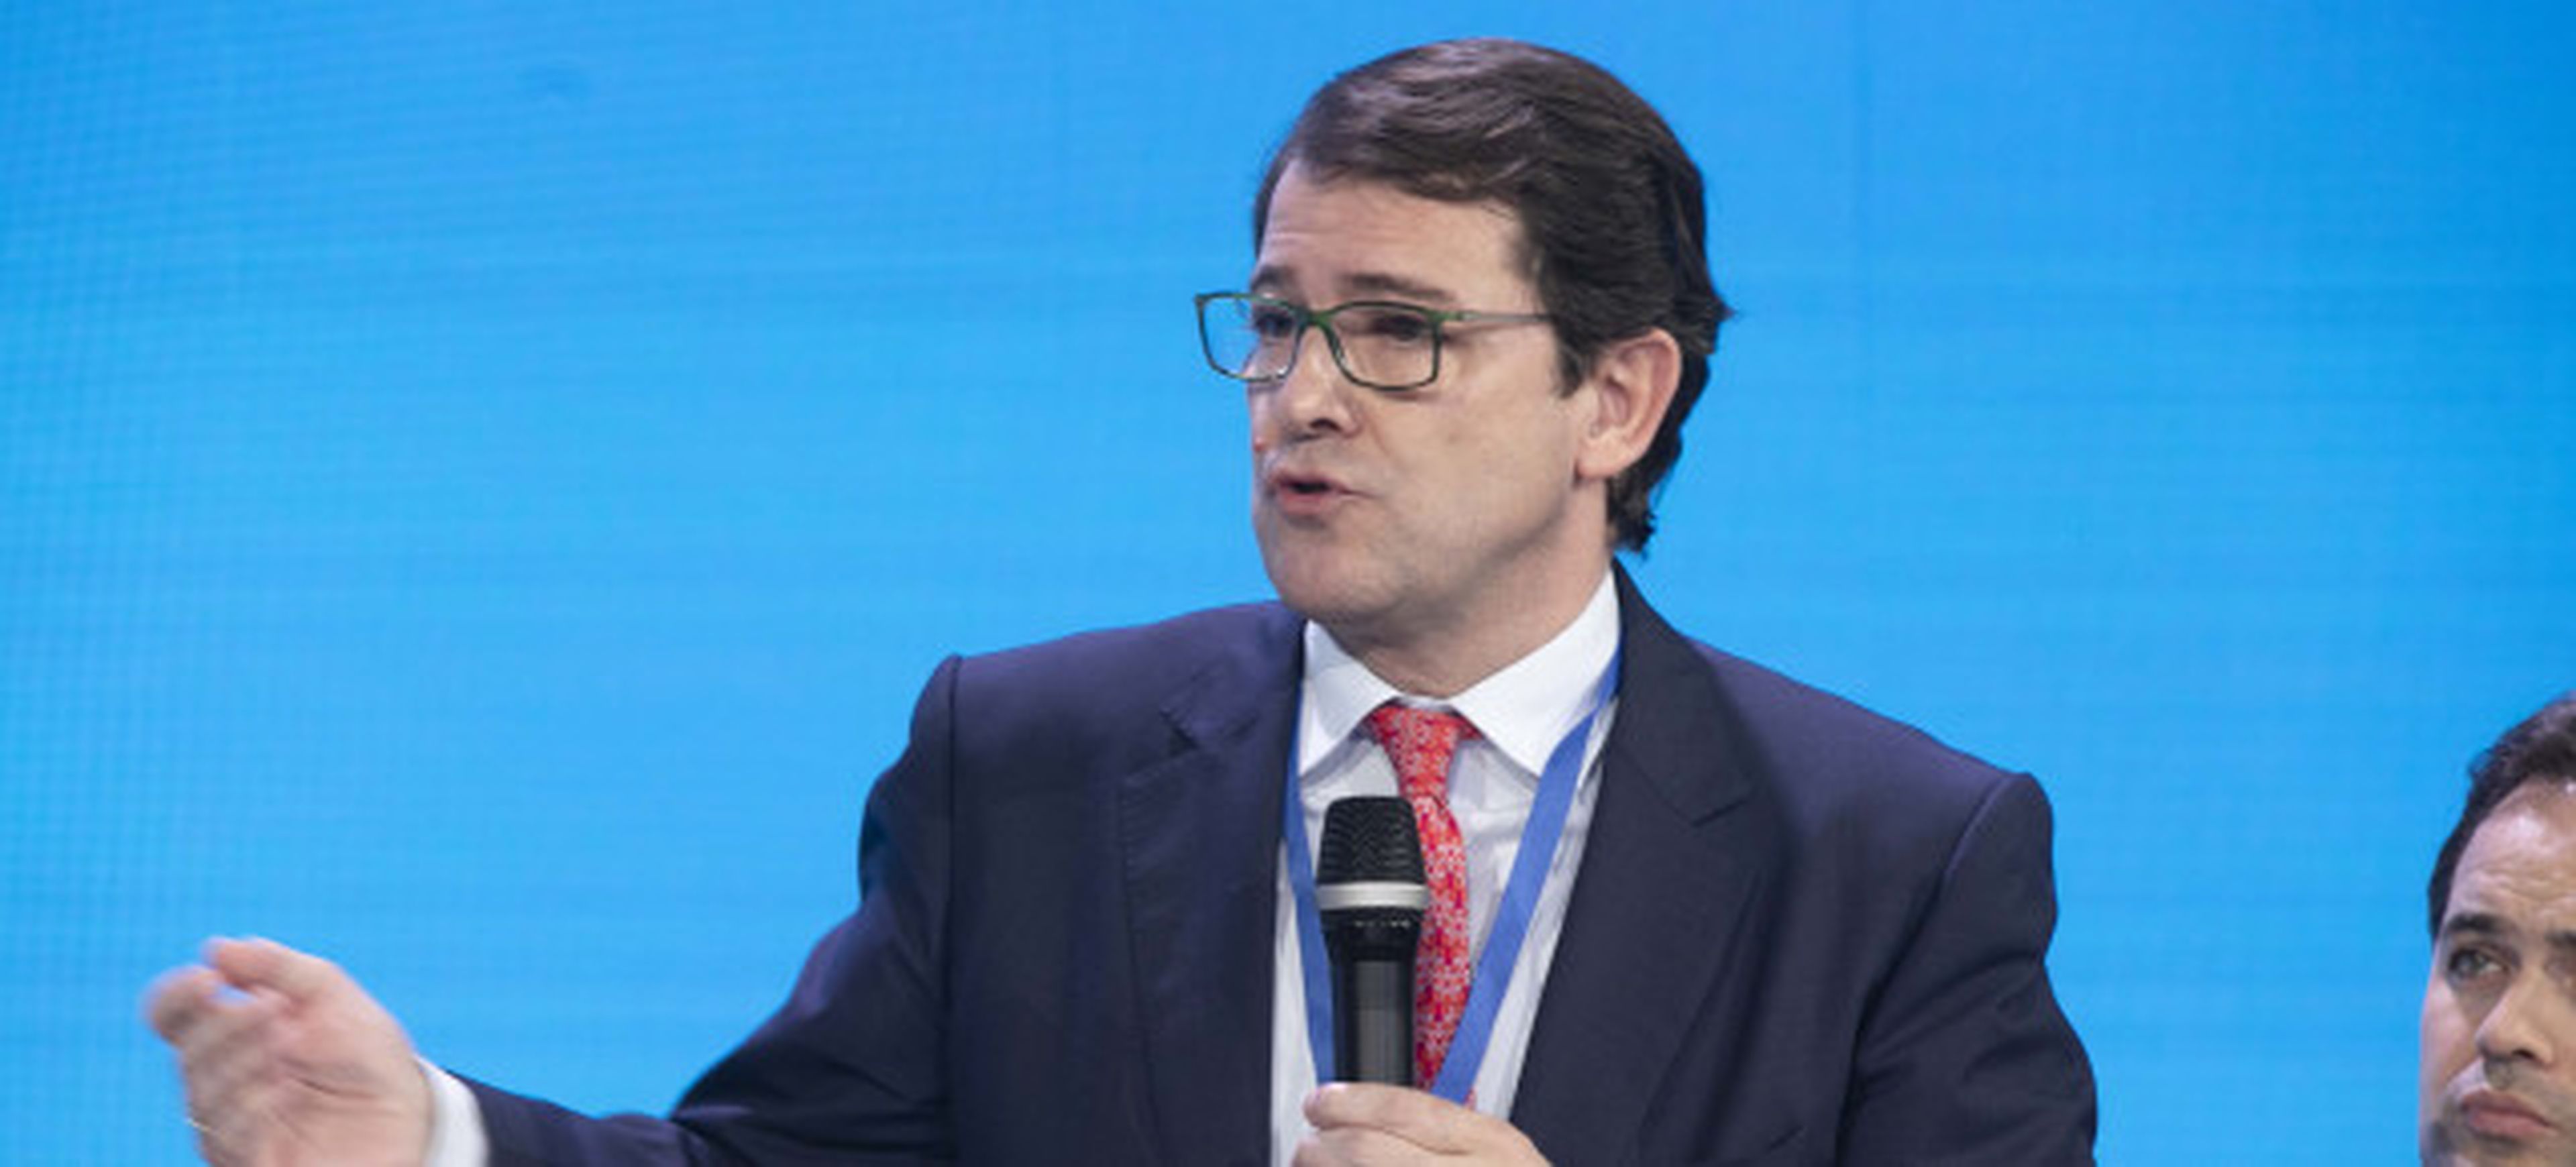 Alfonso Mañueco, candidato del PP a la presidencia de Castilla y León